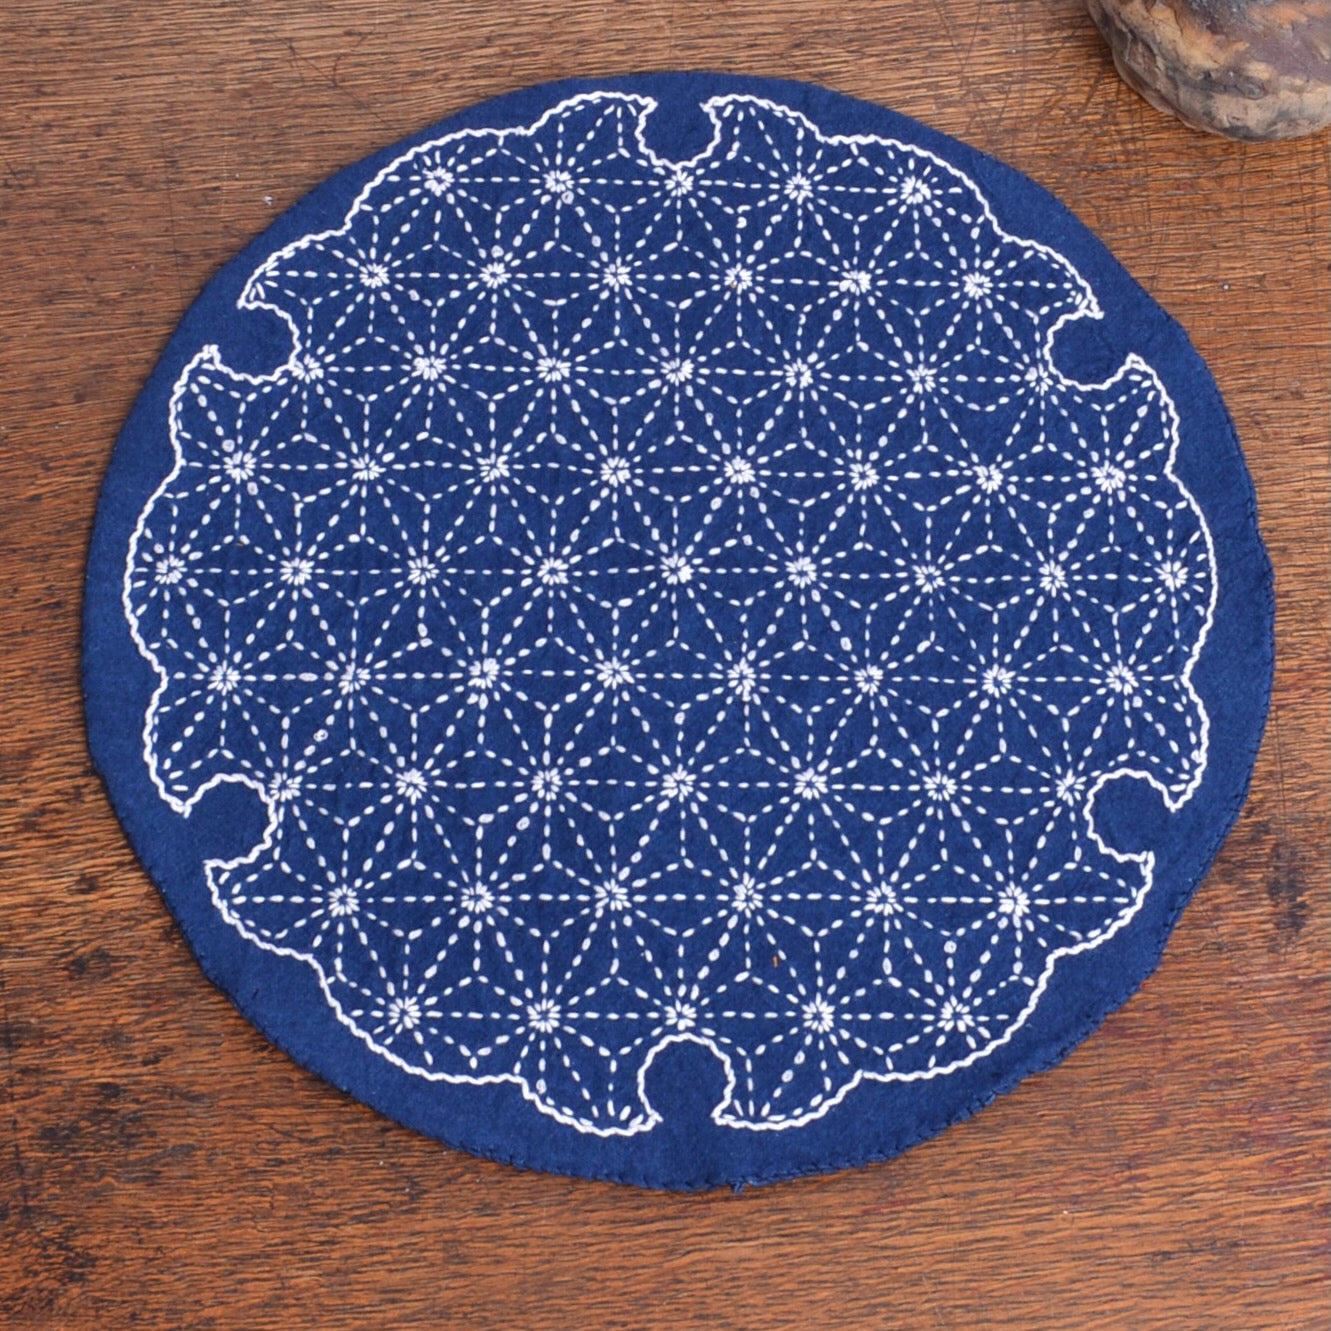 Sashiko kit for round table mat, hemp leaf design